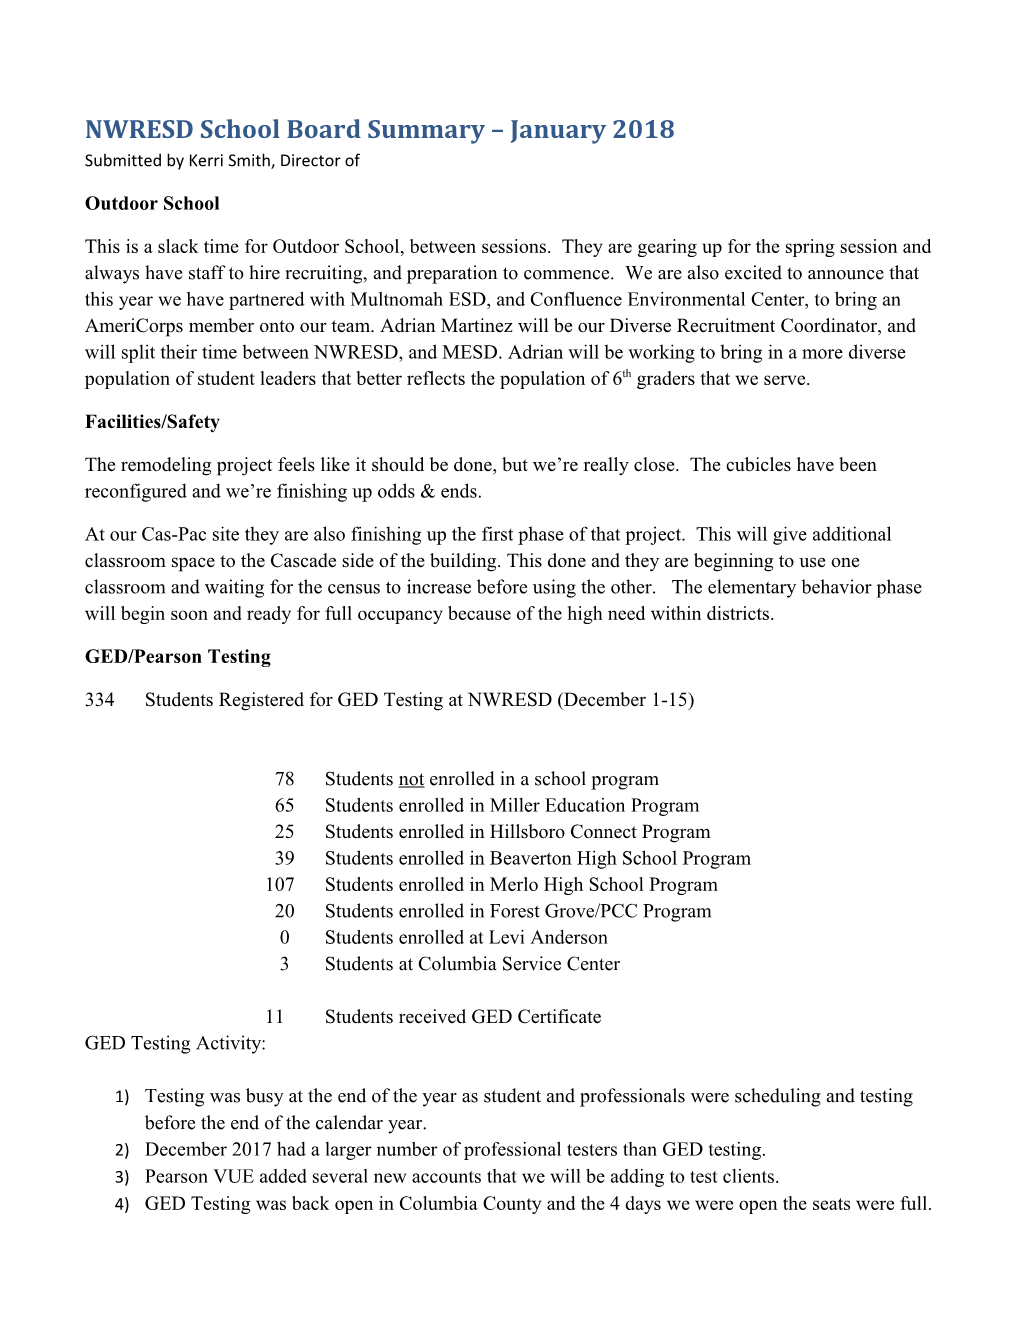 NWRESD School Board Summary January 2018